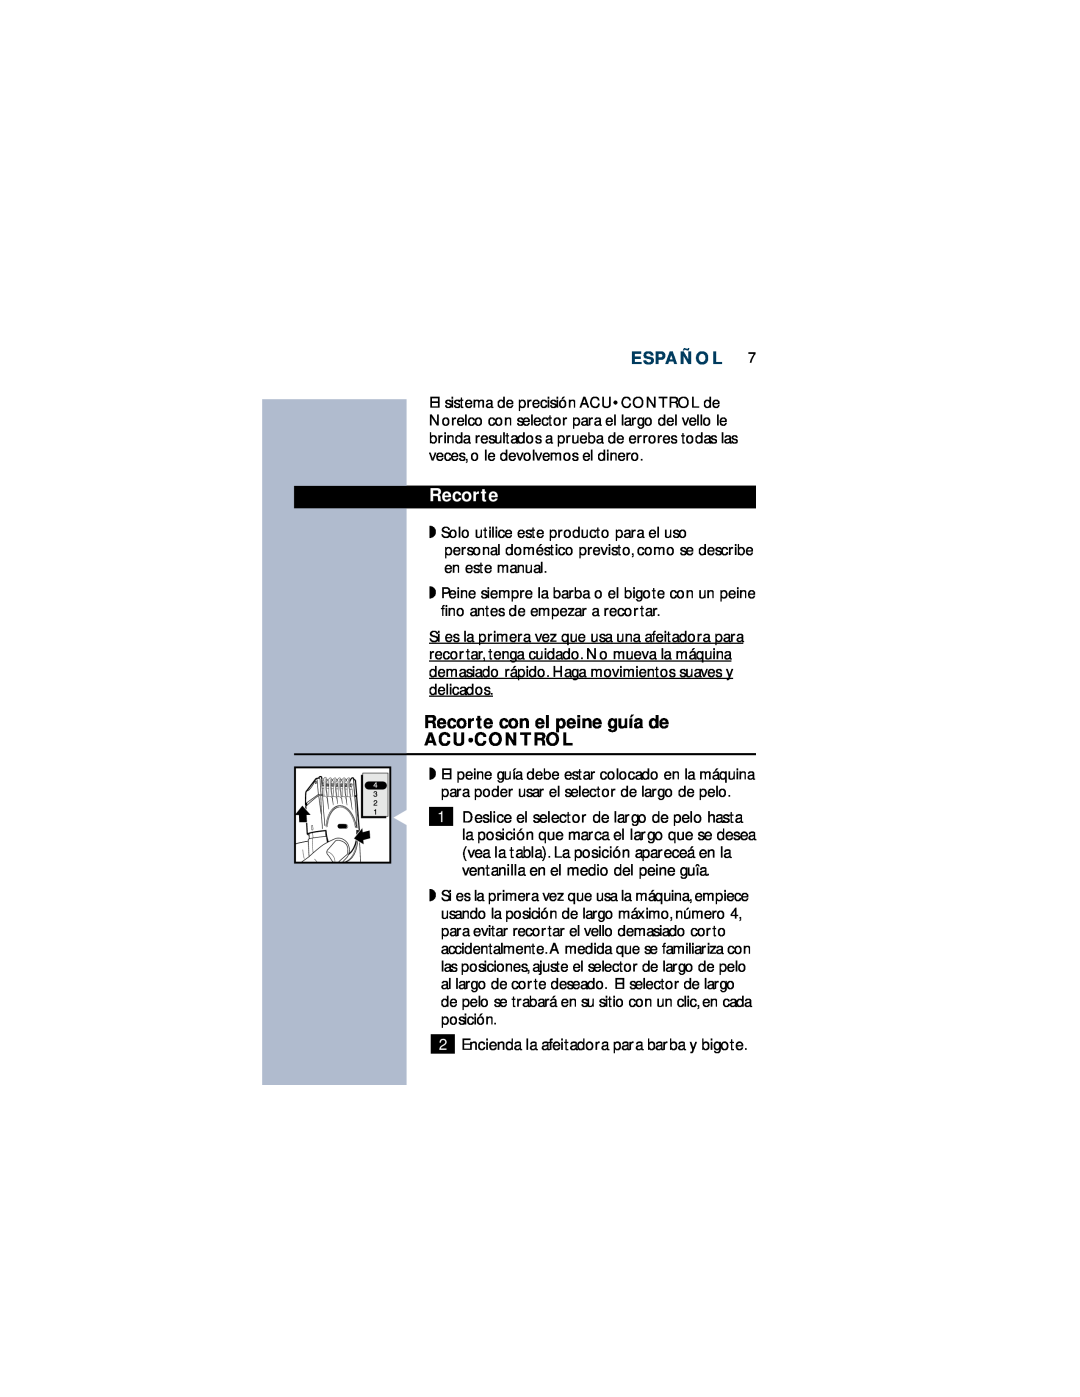 Philips T660 manual Recorte con el peine guía de ACUCONTROL, Español 